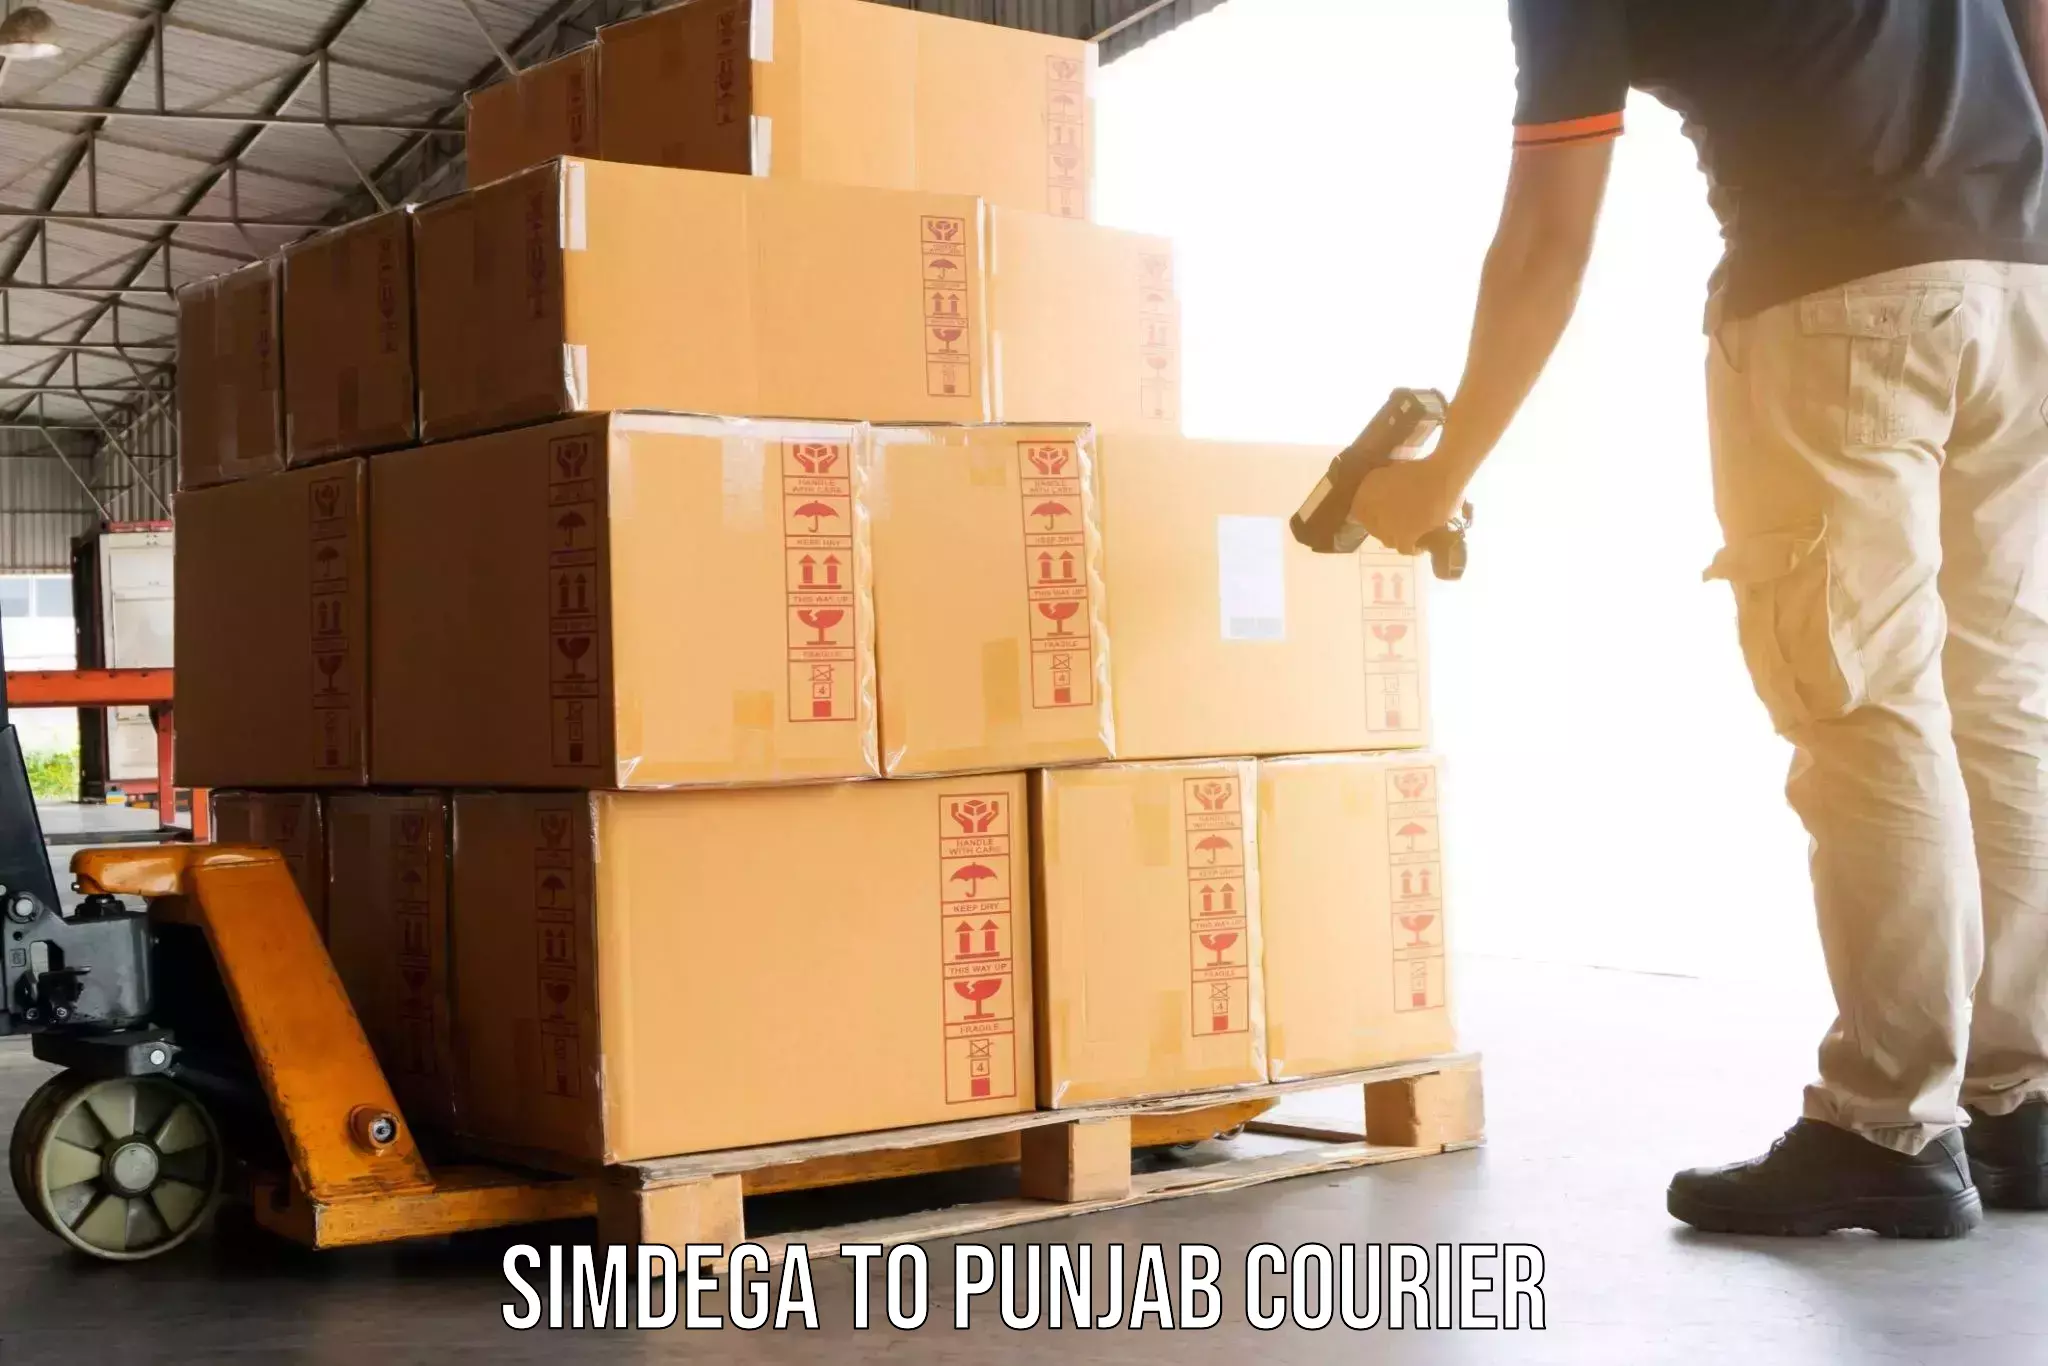 Furniture moving experts Simdega to Punjab